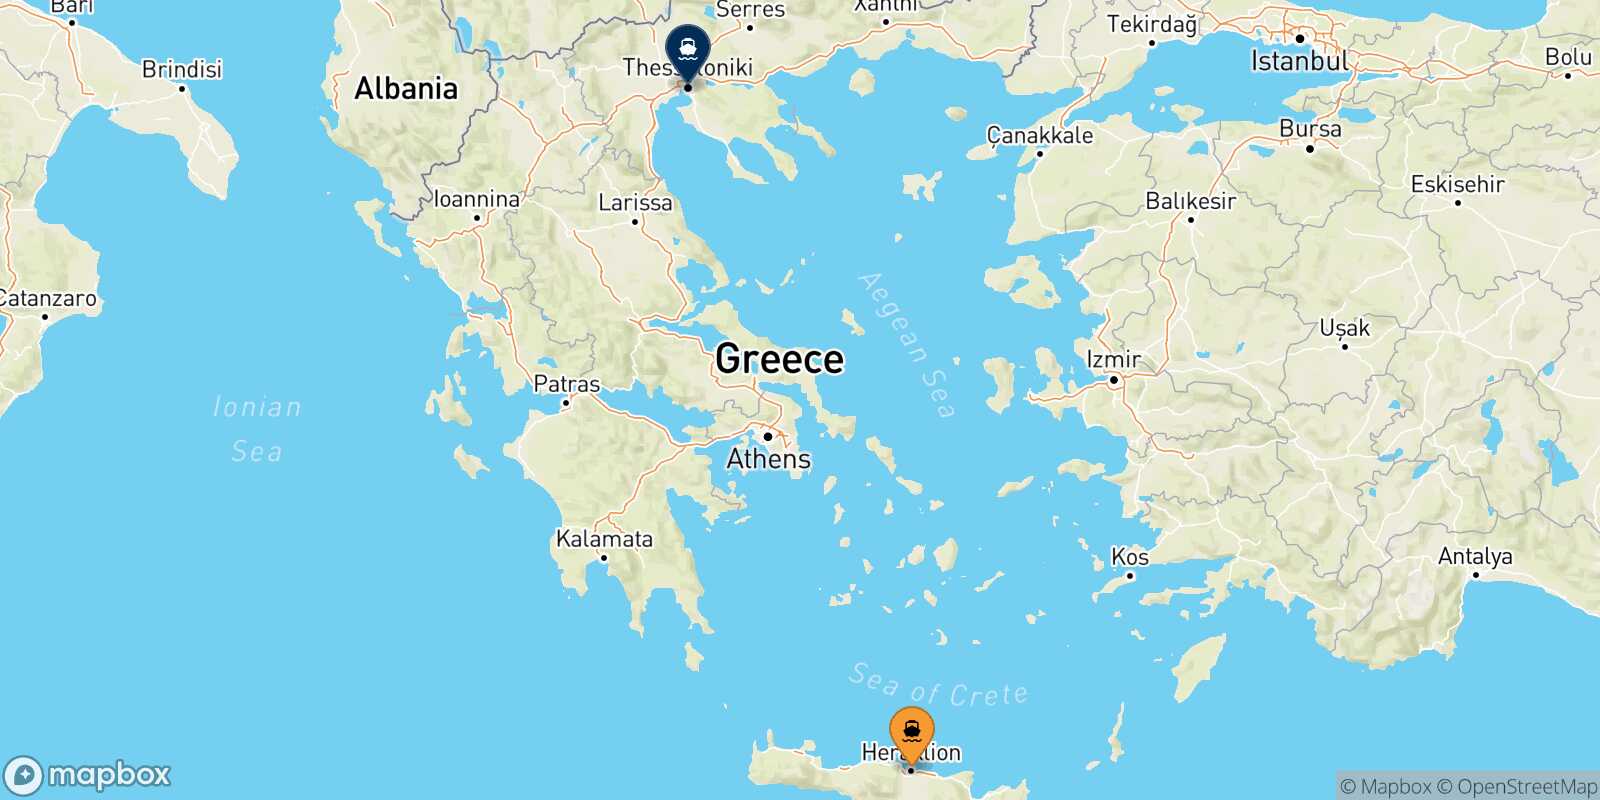 Heraklion Thessaloniki route map